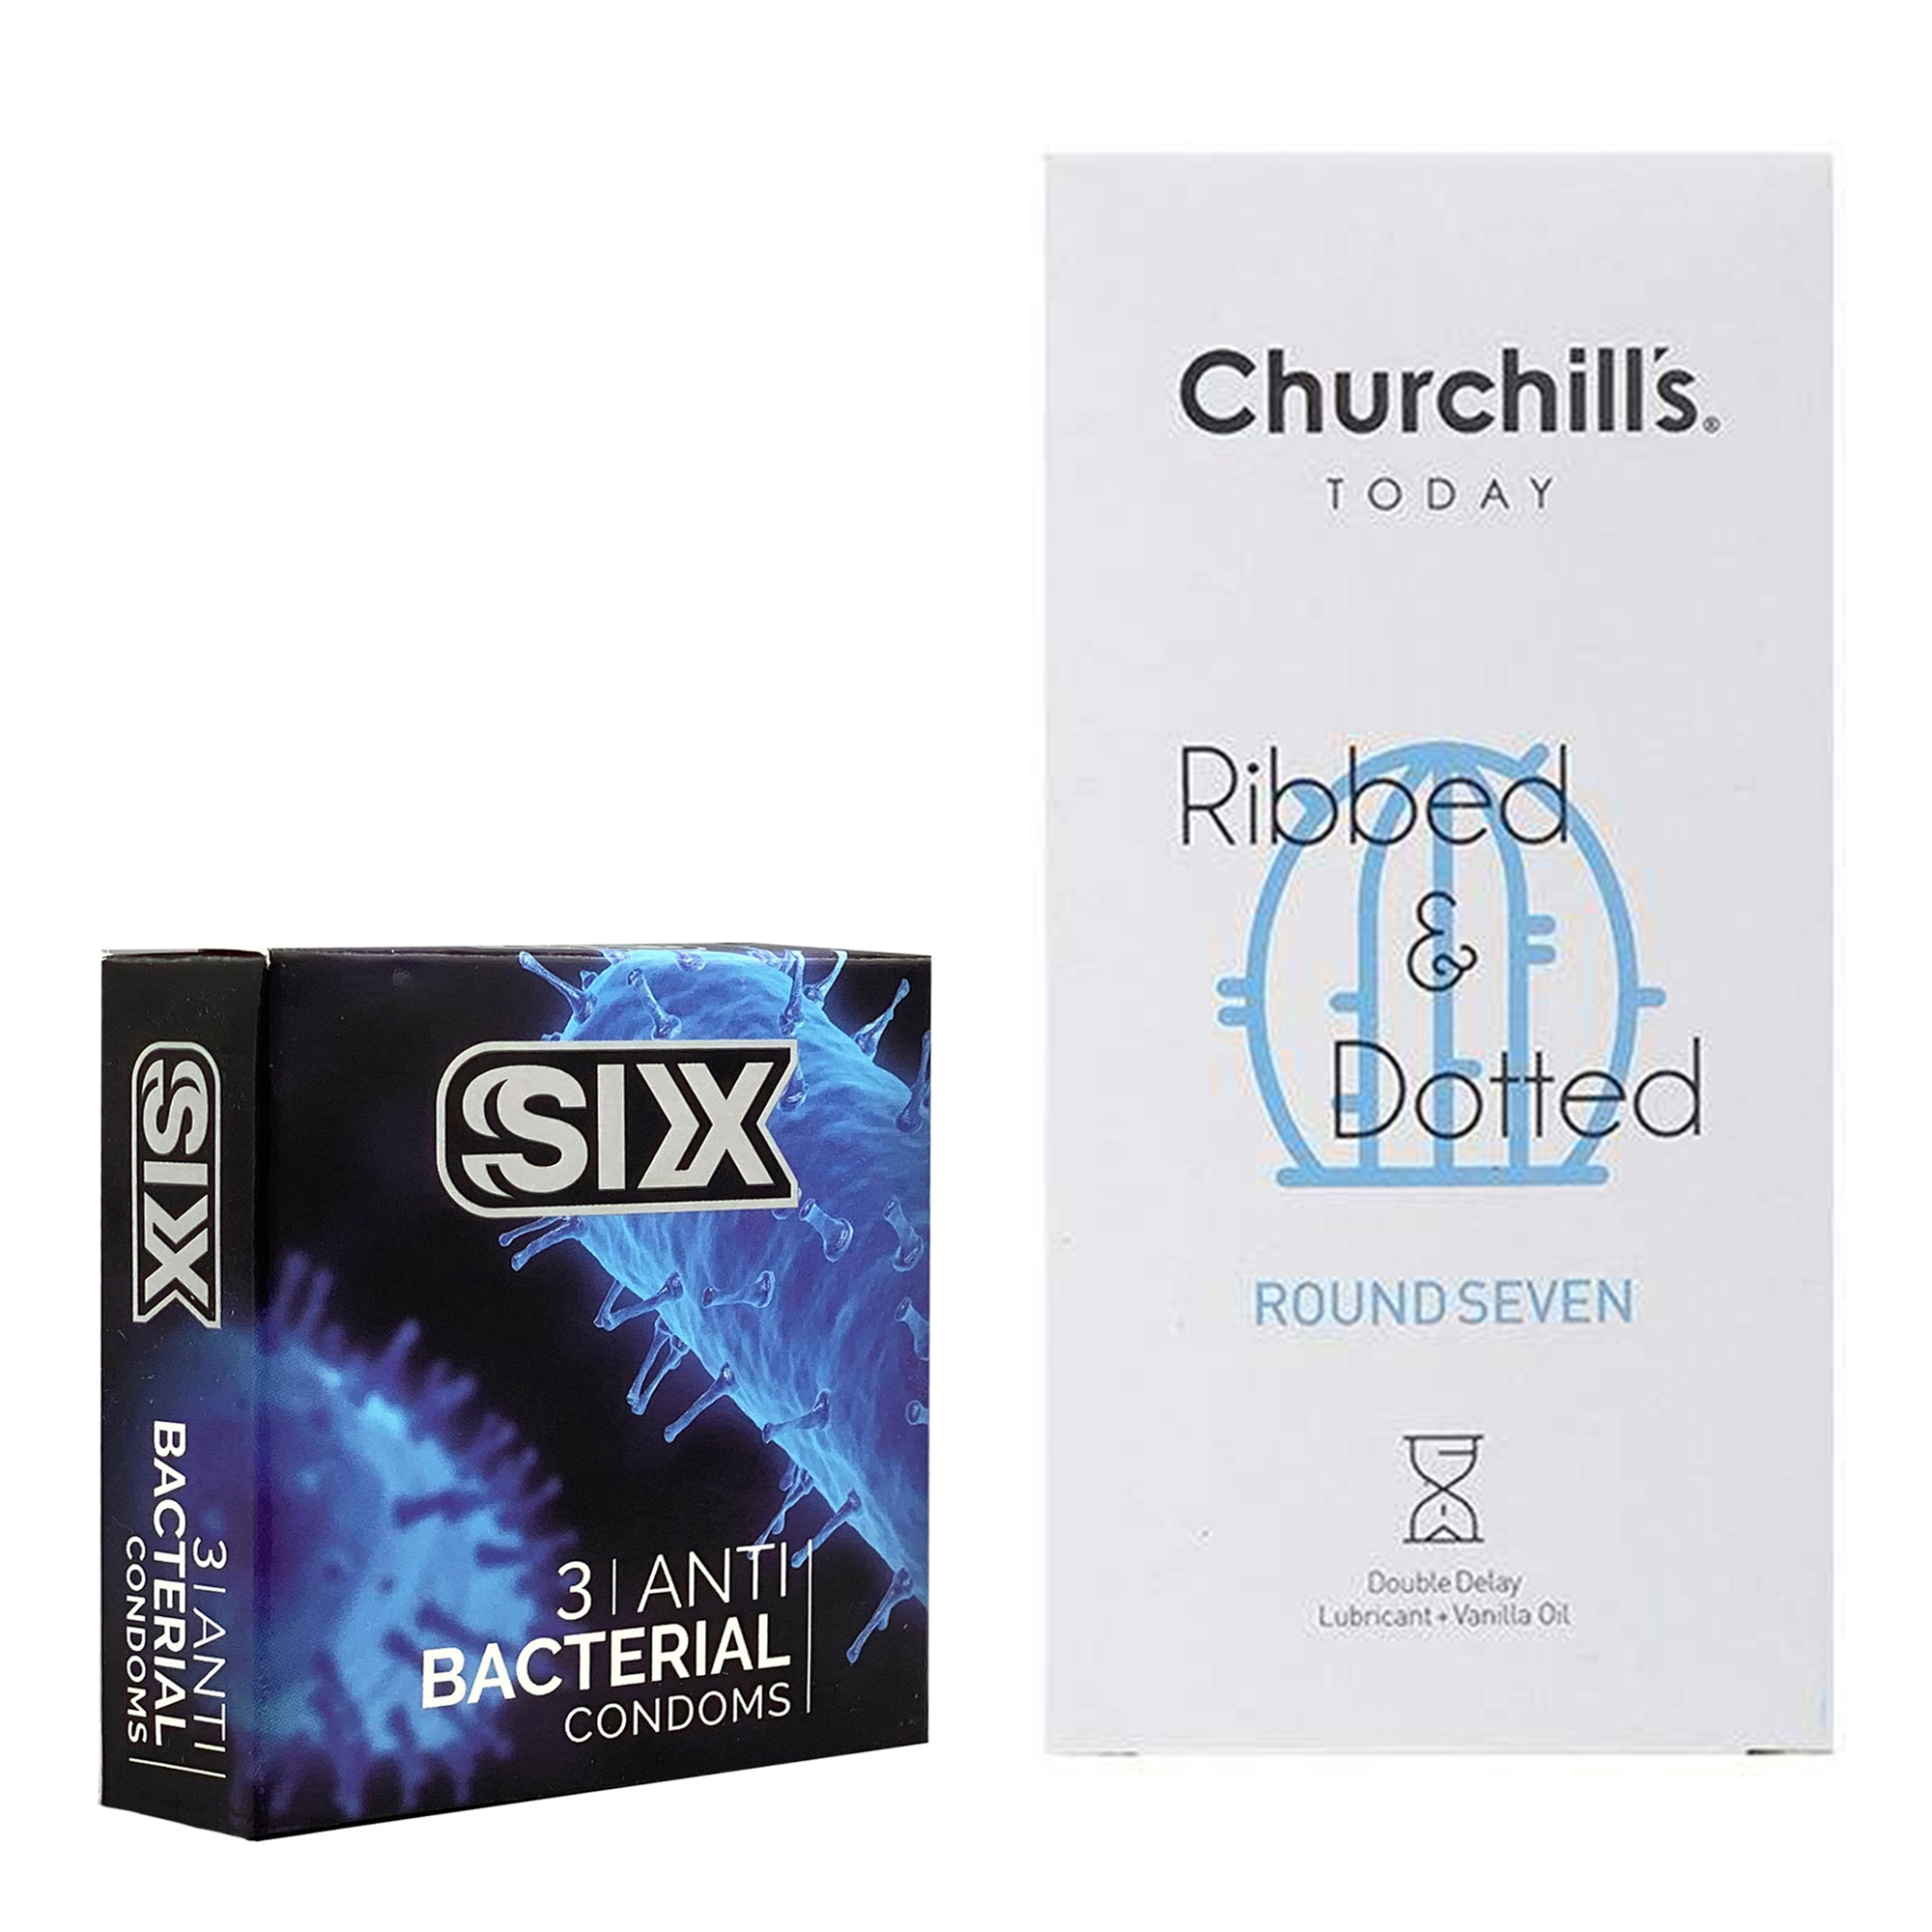 کاندوم چرچیلز مدل Round Seven بسته 12 عددی به همراه کاندوم سیکس مدل آنتی باکتریال بسته 3 عددی 